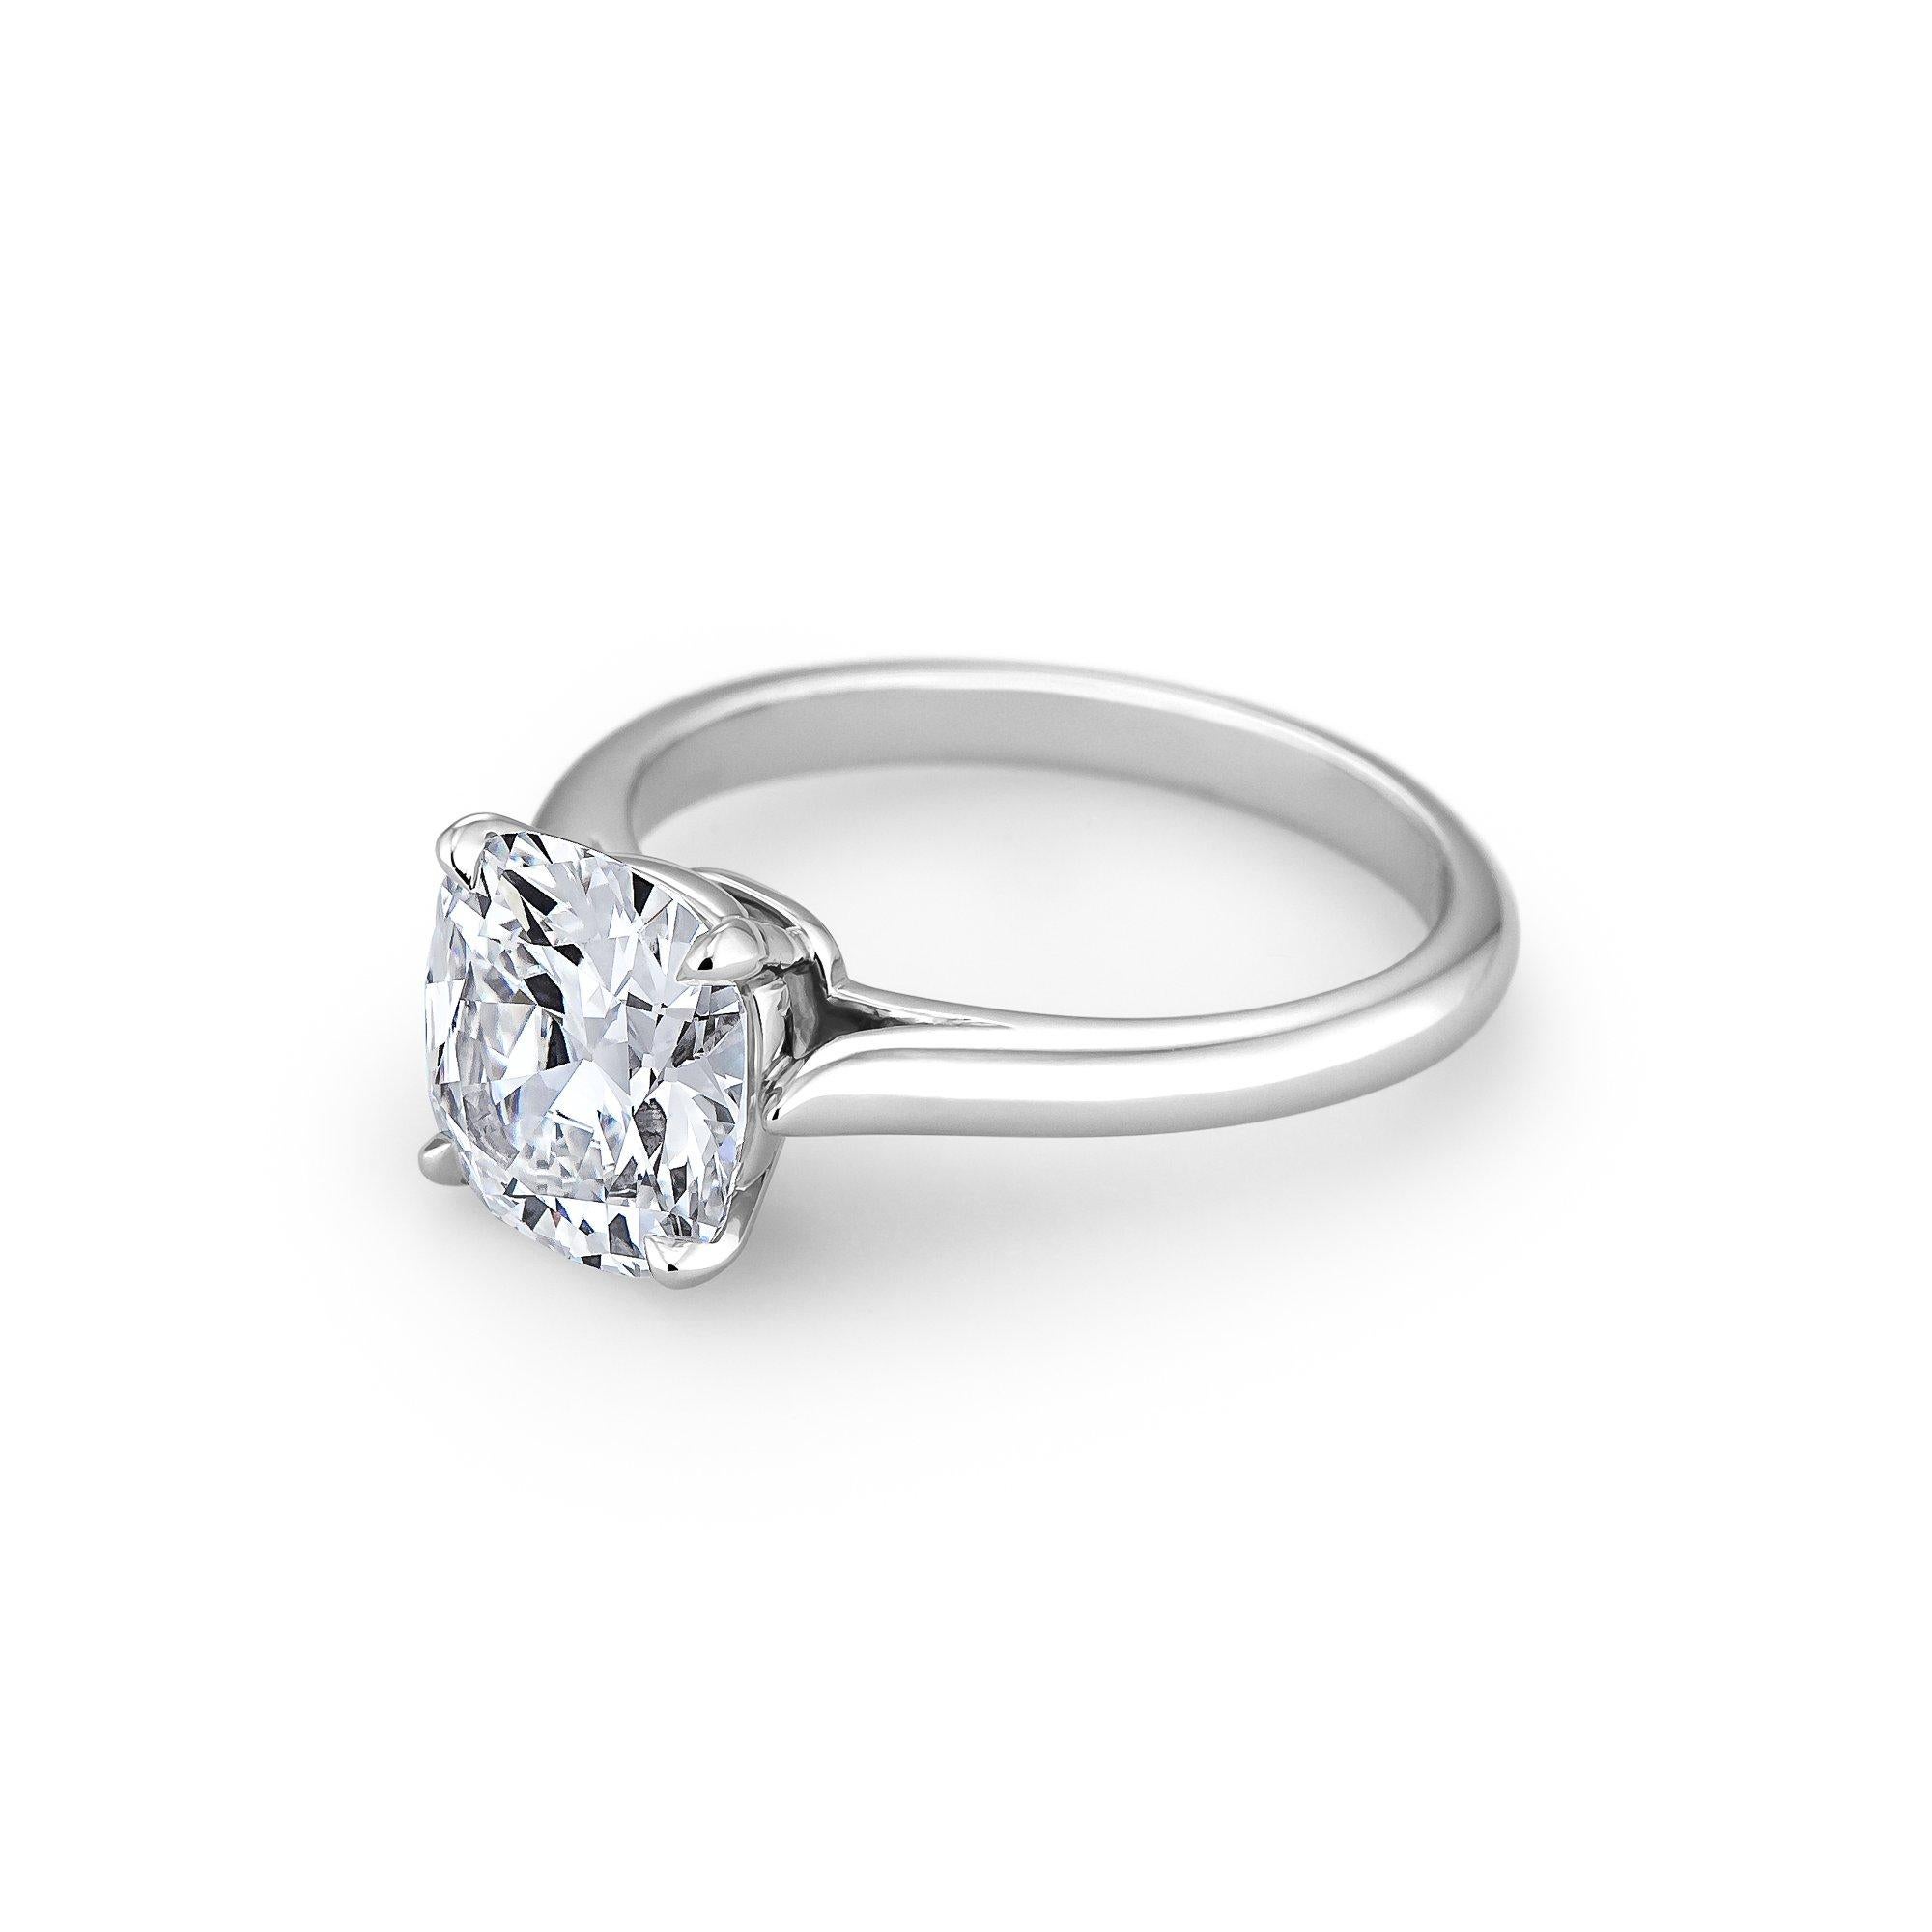 2.32 Carat Cushion Brilliant Cut Diamond Platinum Engagement Ring (Zeitgenössisch)